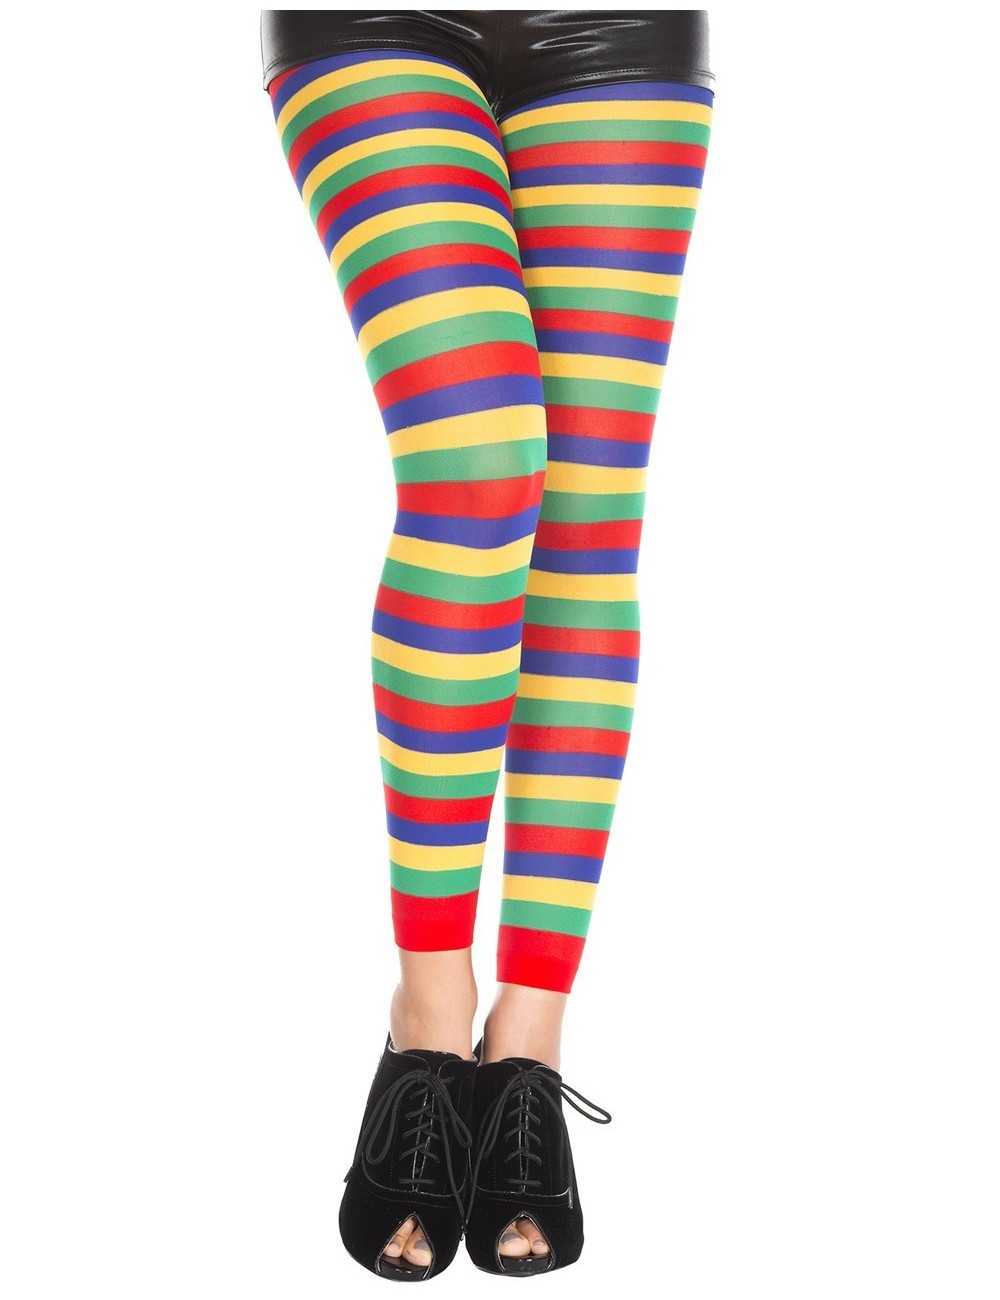 Lingerie - Leggings Sexy - Legging fin fantaisie couleur arc an ciel en bandes horizontales - Music Legs